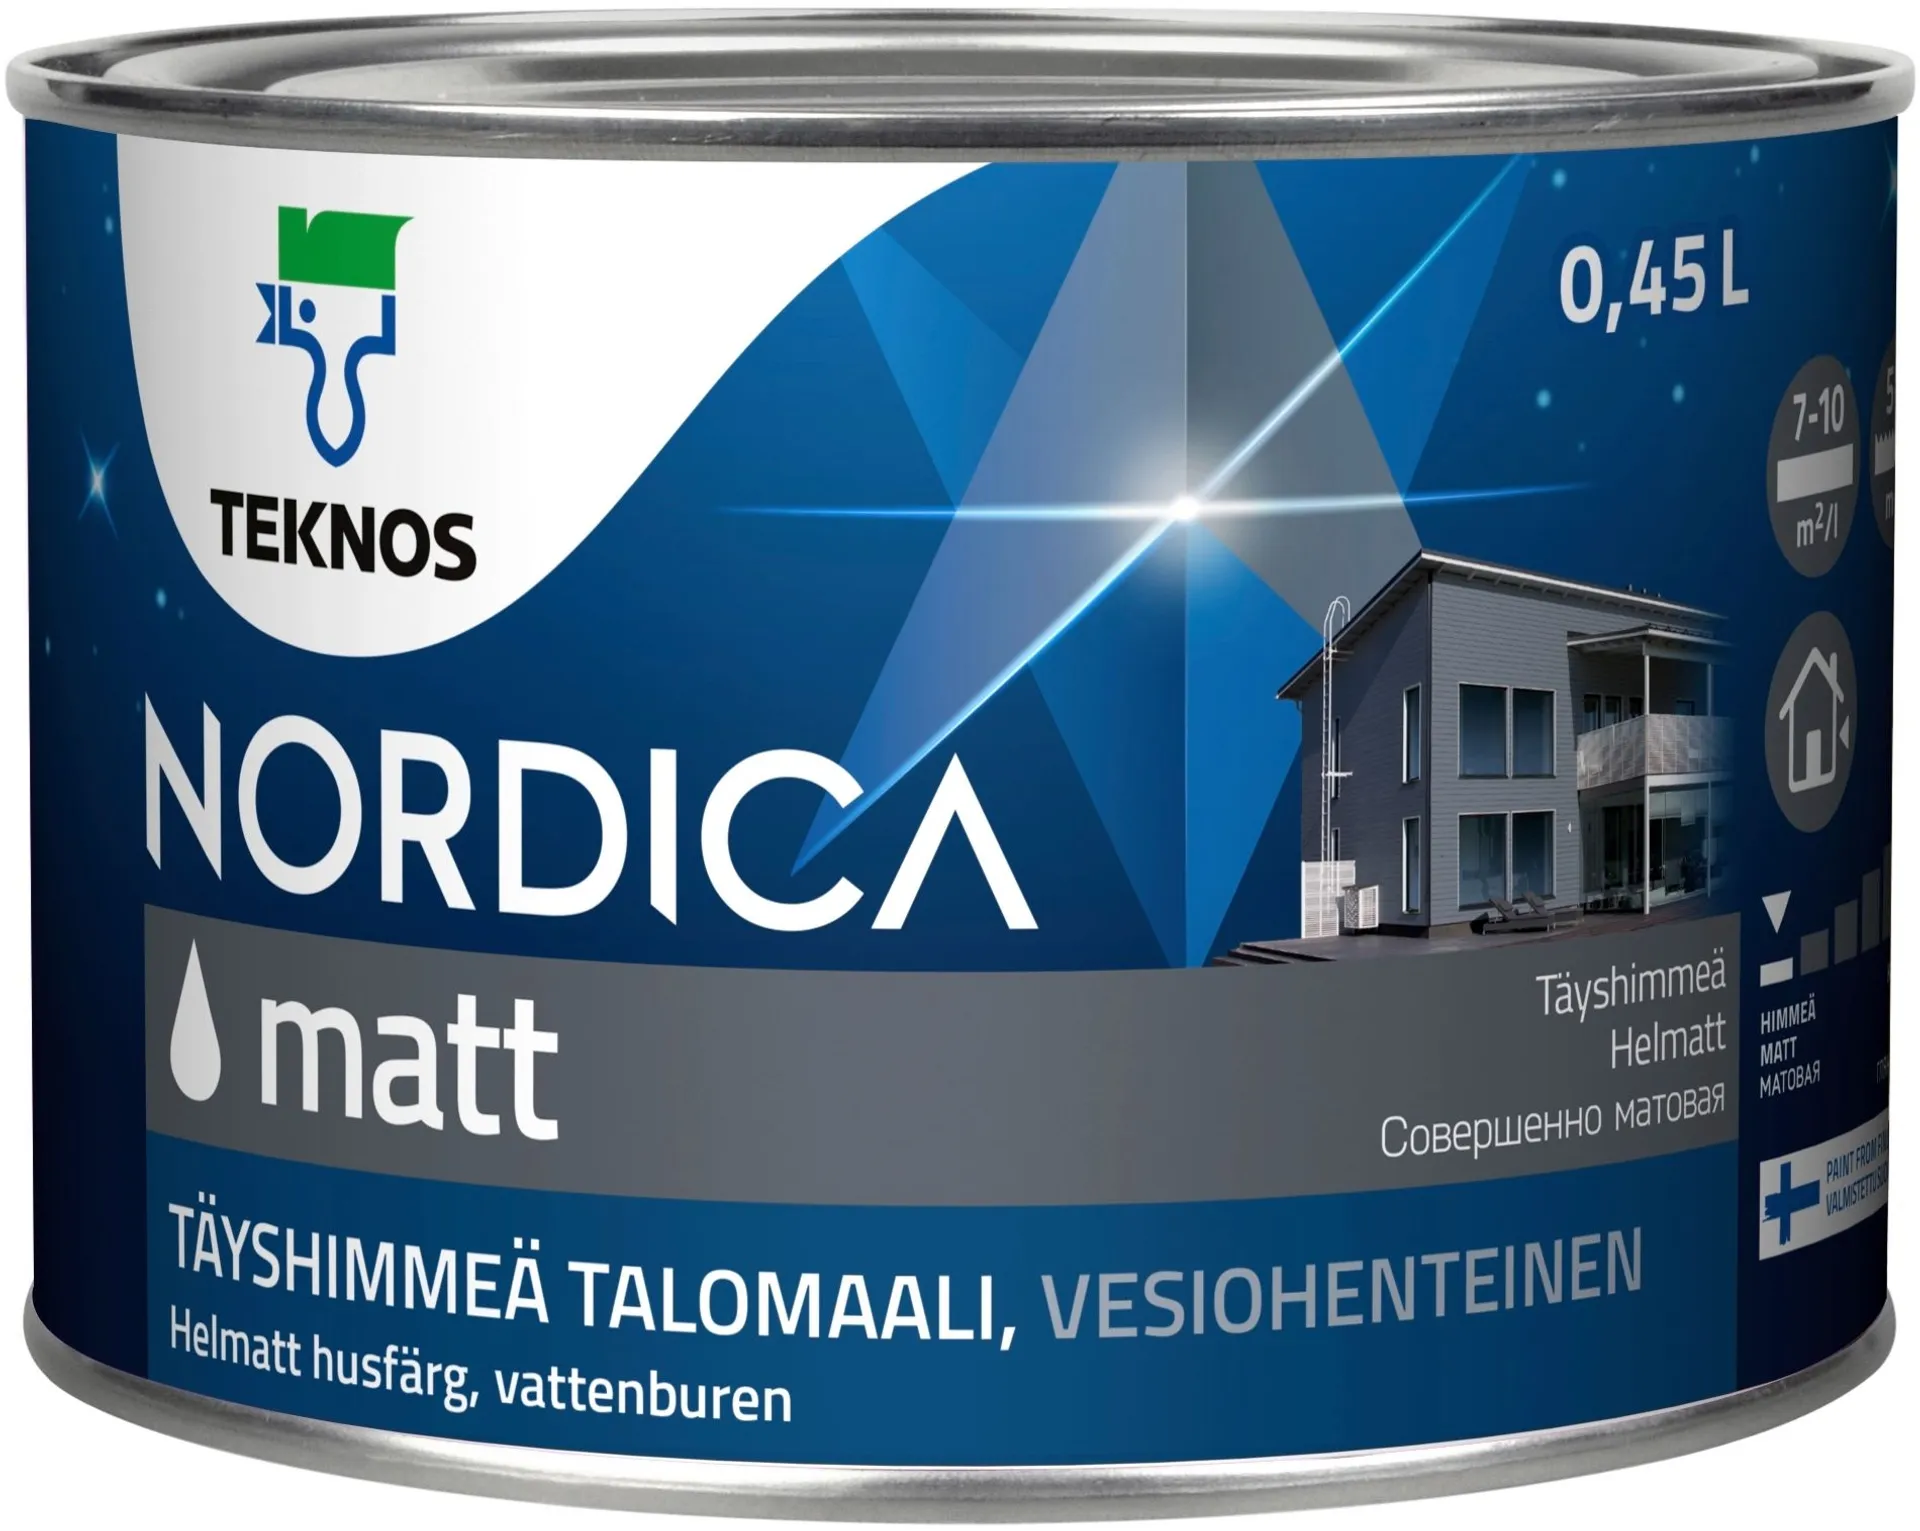 Teknos Nordica Matt talomaali 0,45l PM3 täyshimmeä Vain sävytykseen